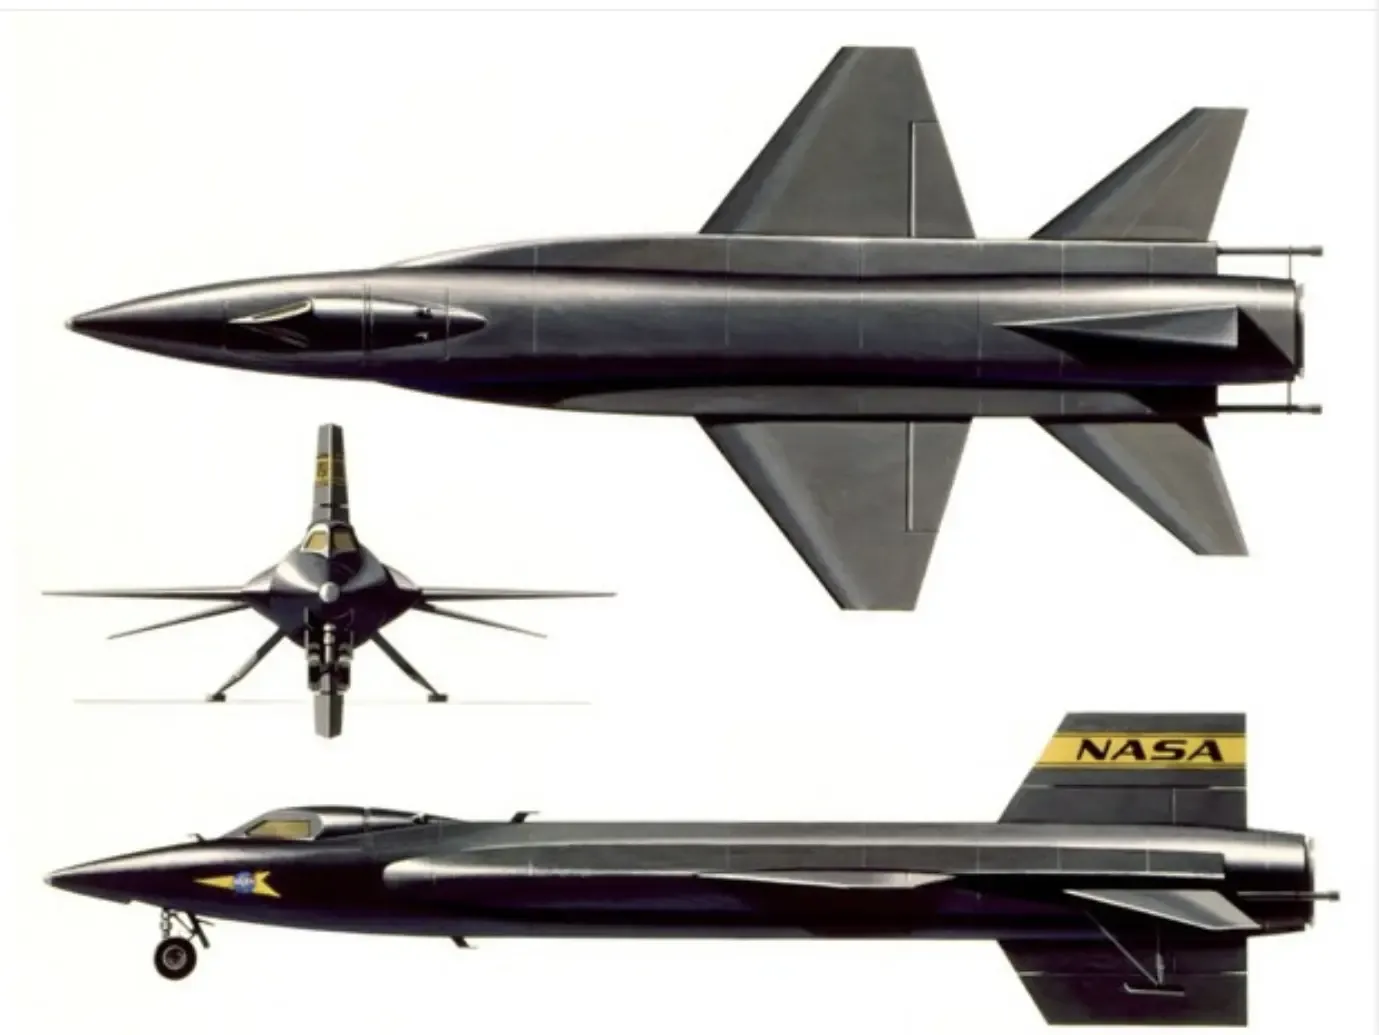 NASA/USA X-15 (Mach 6.7 hypersonic aircraft)